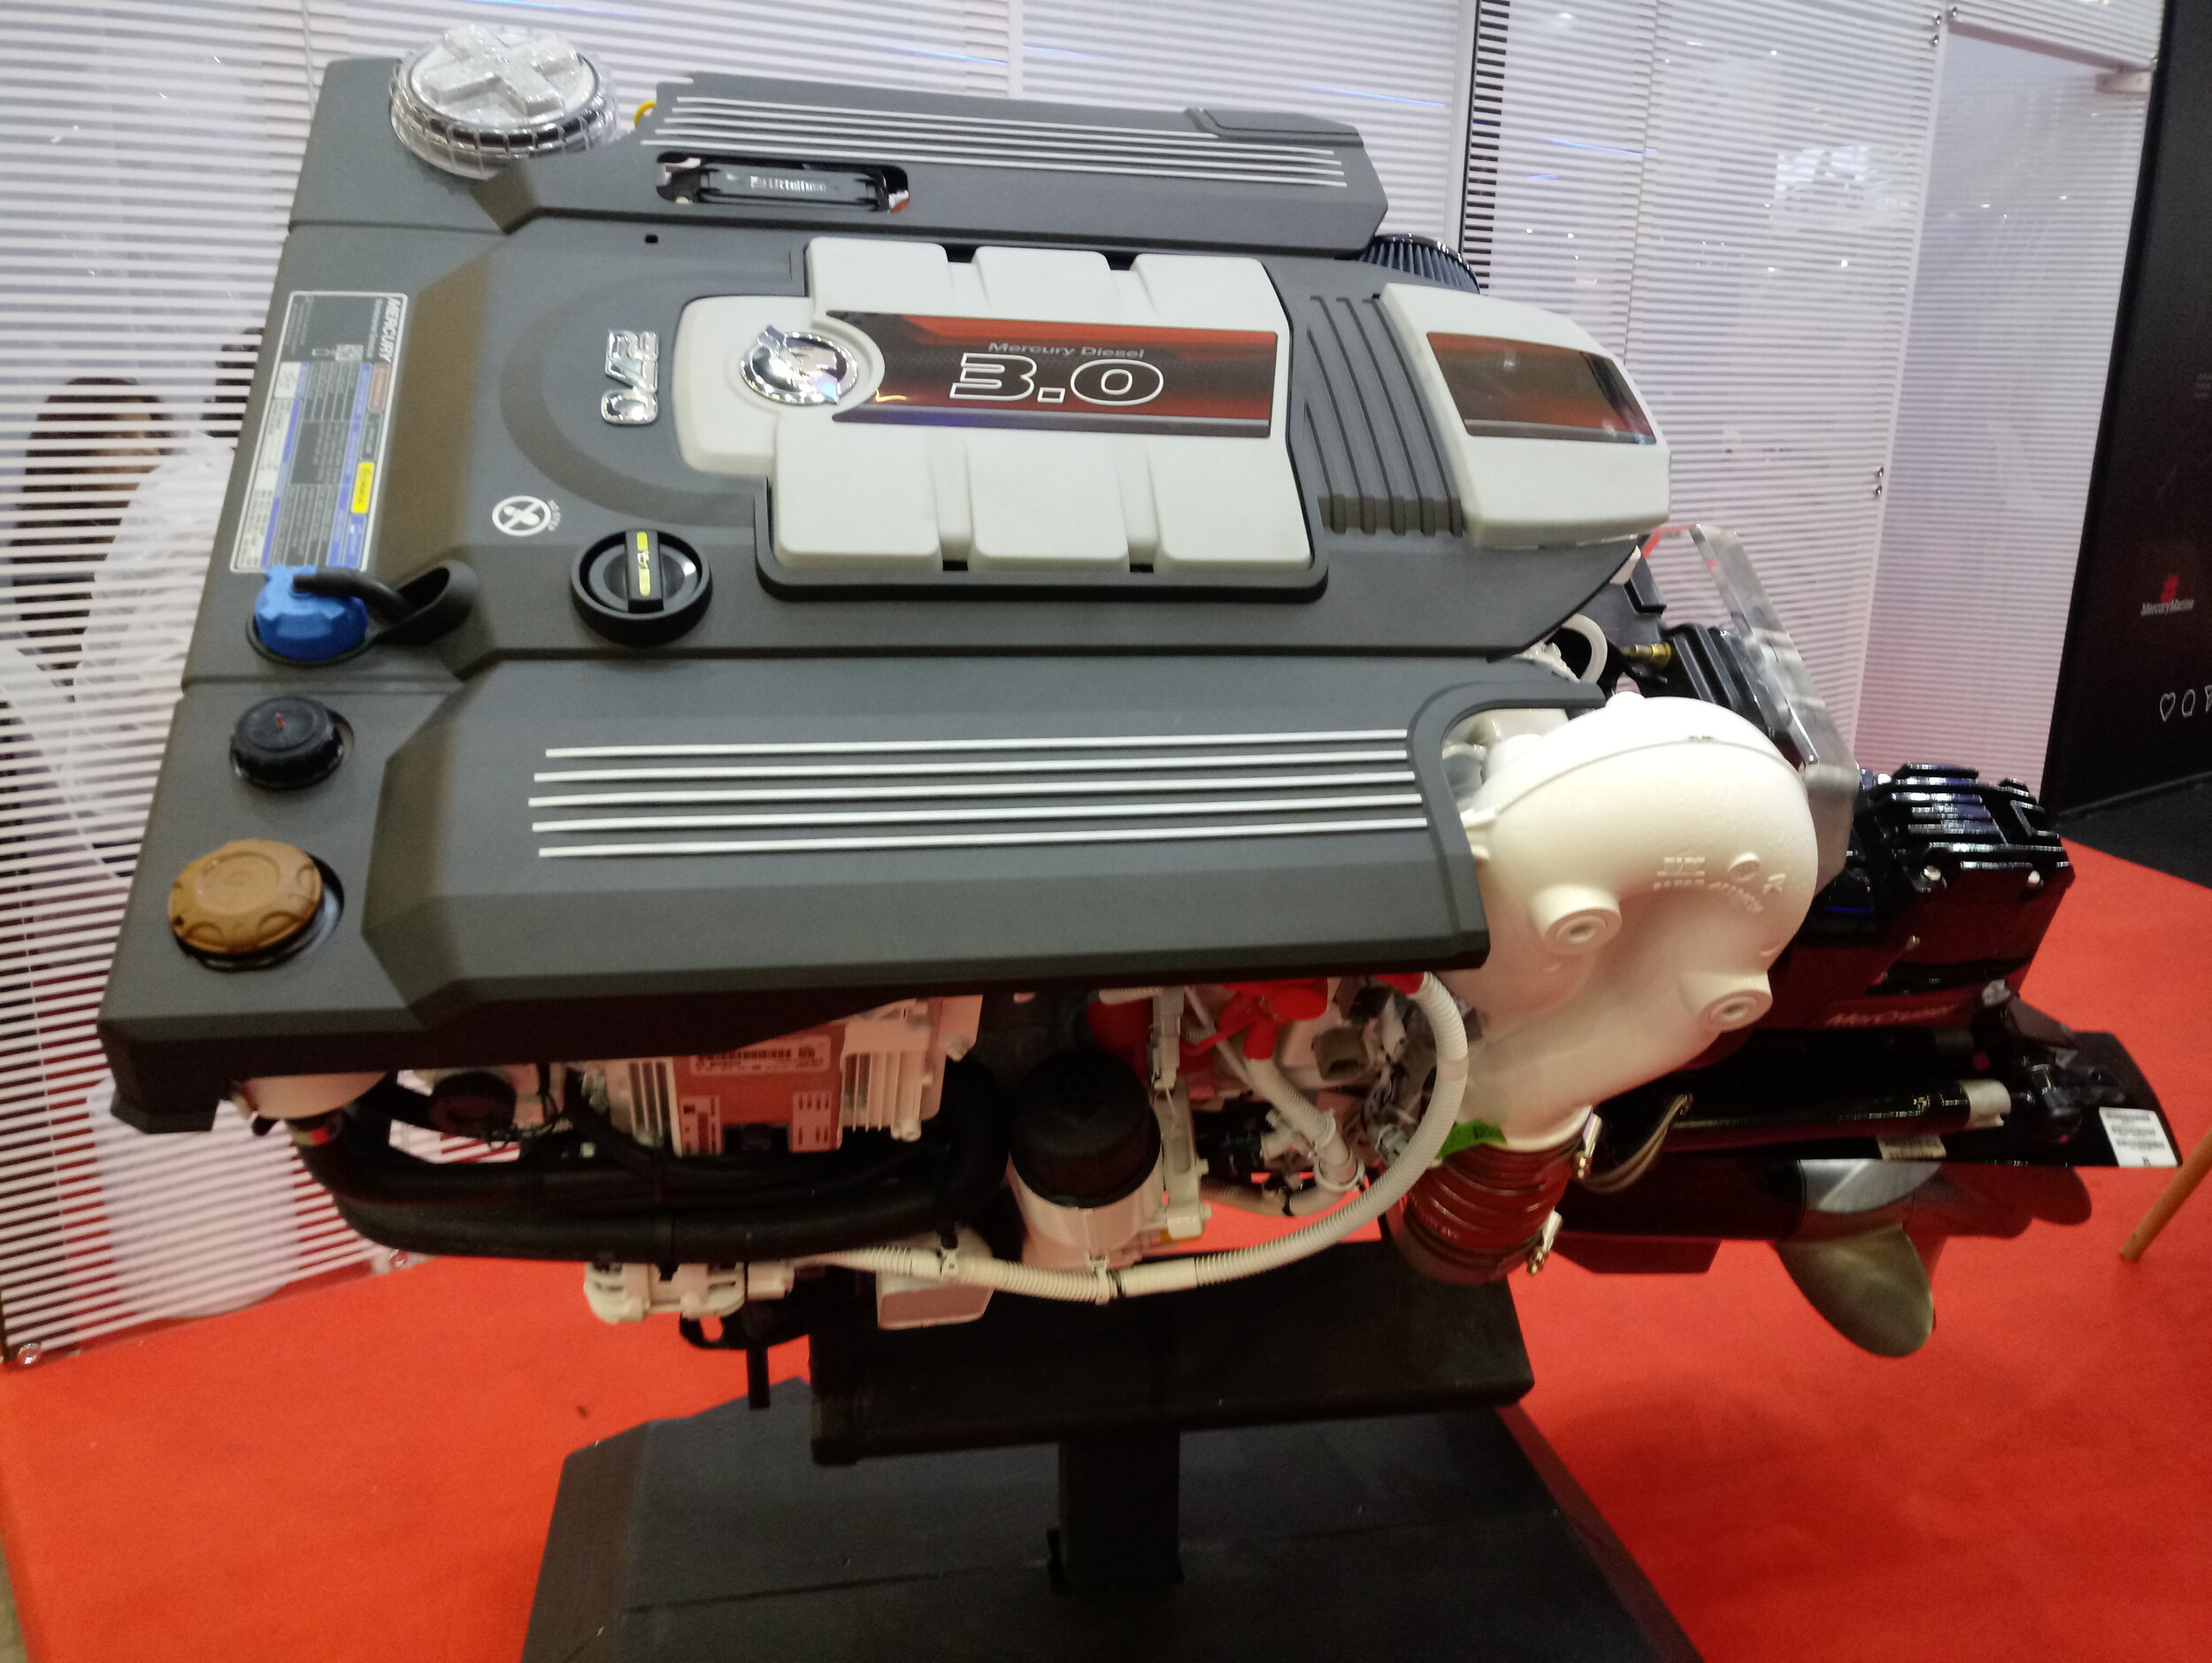 Novo centro-rabeta Mercury V6 de 270 hp